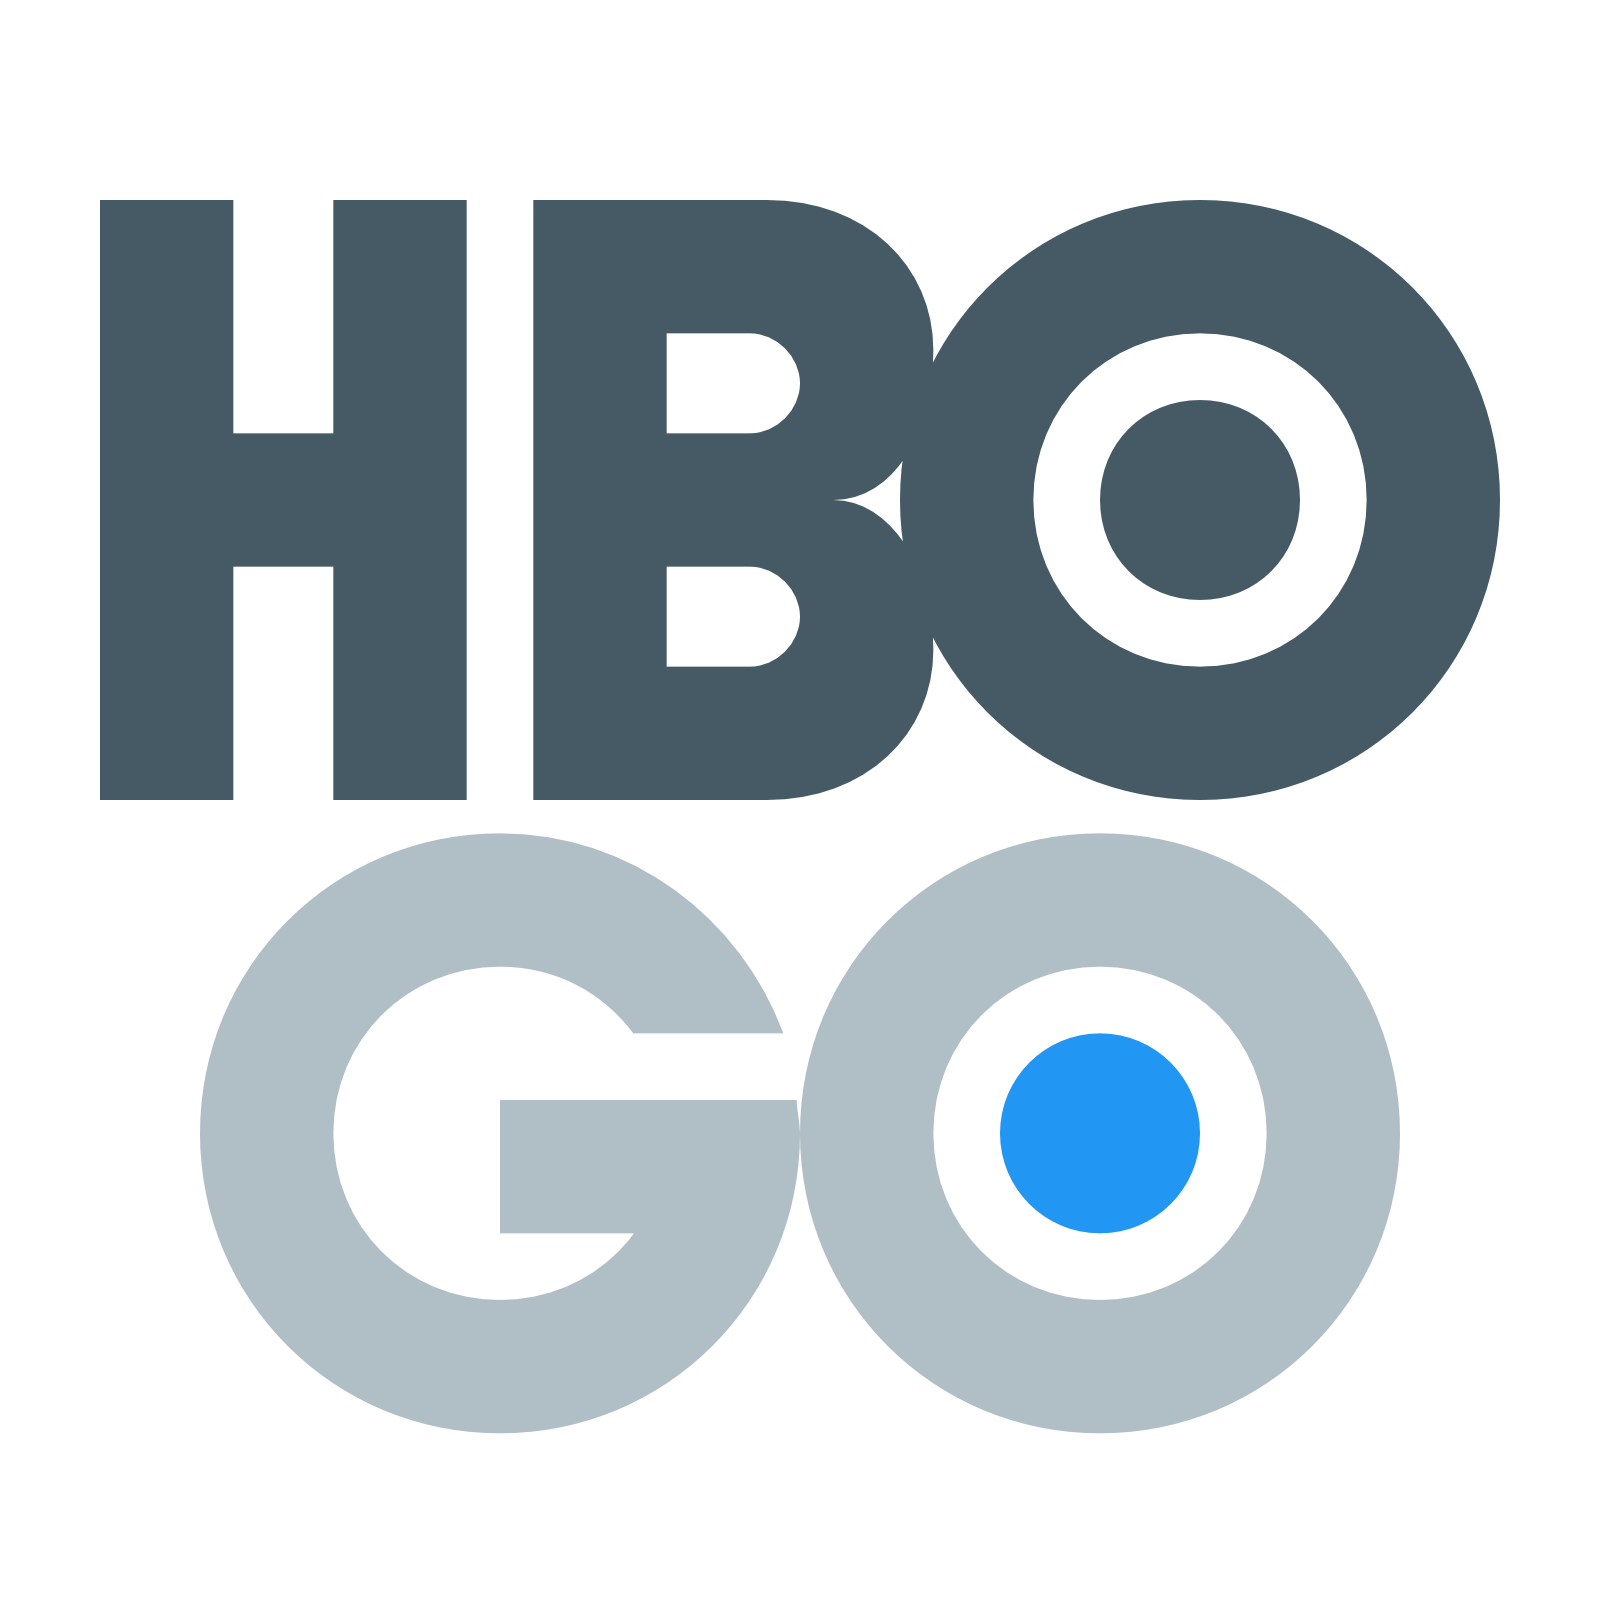 HBO Go Logo - Hbo go Logos